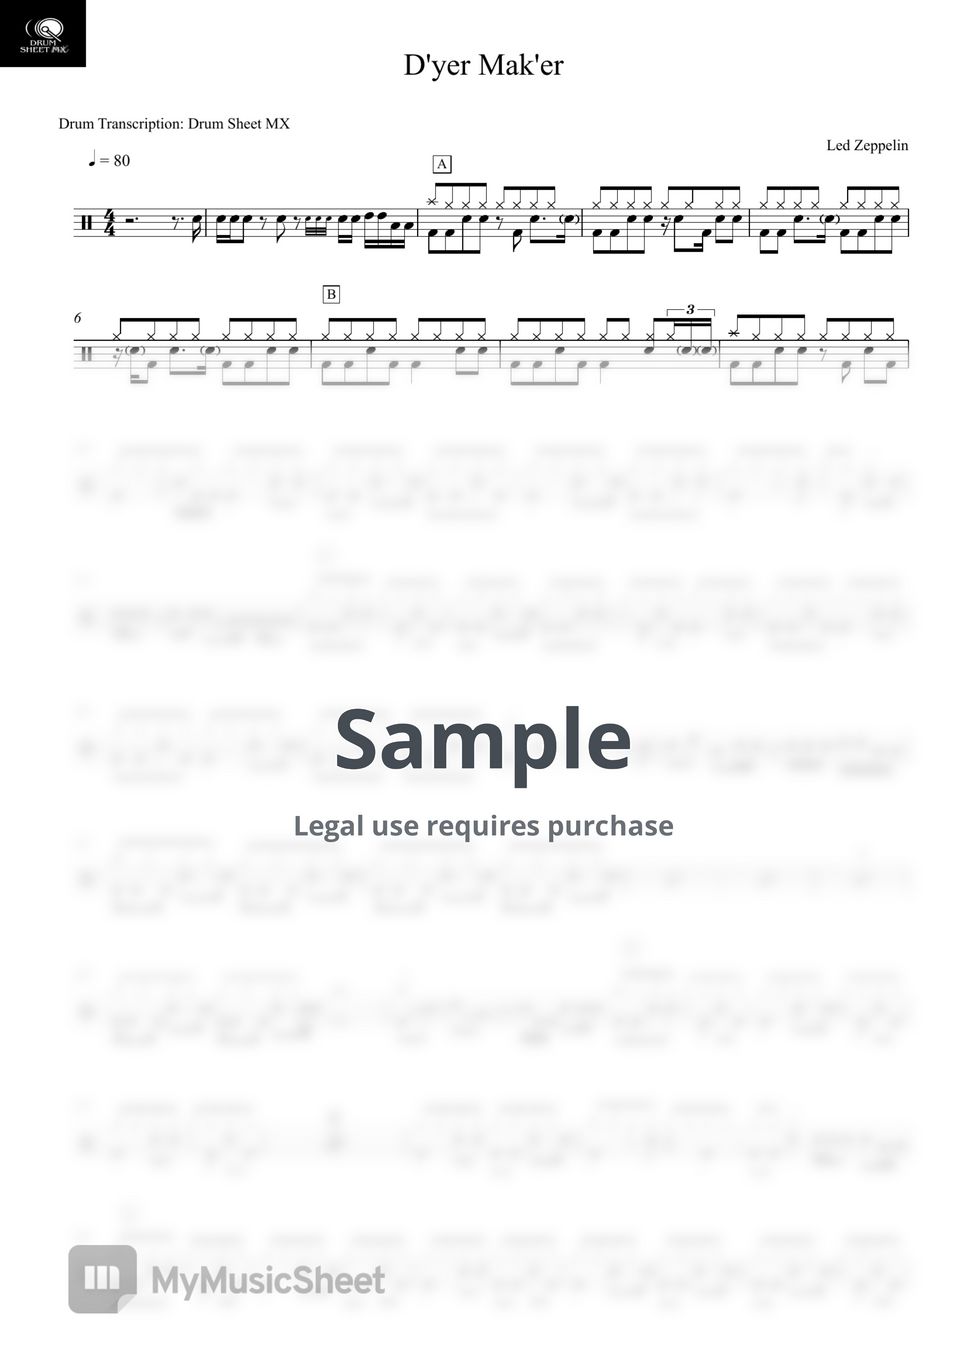 Led Zeppelin - D'yer Mak'er by Drum Transcription: Drum Sheet MX